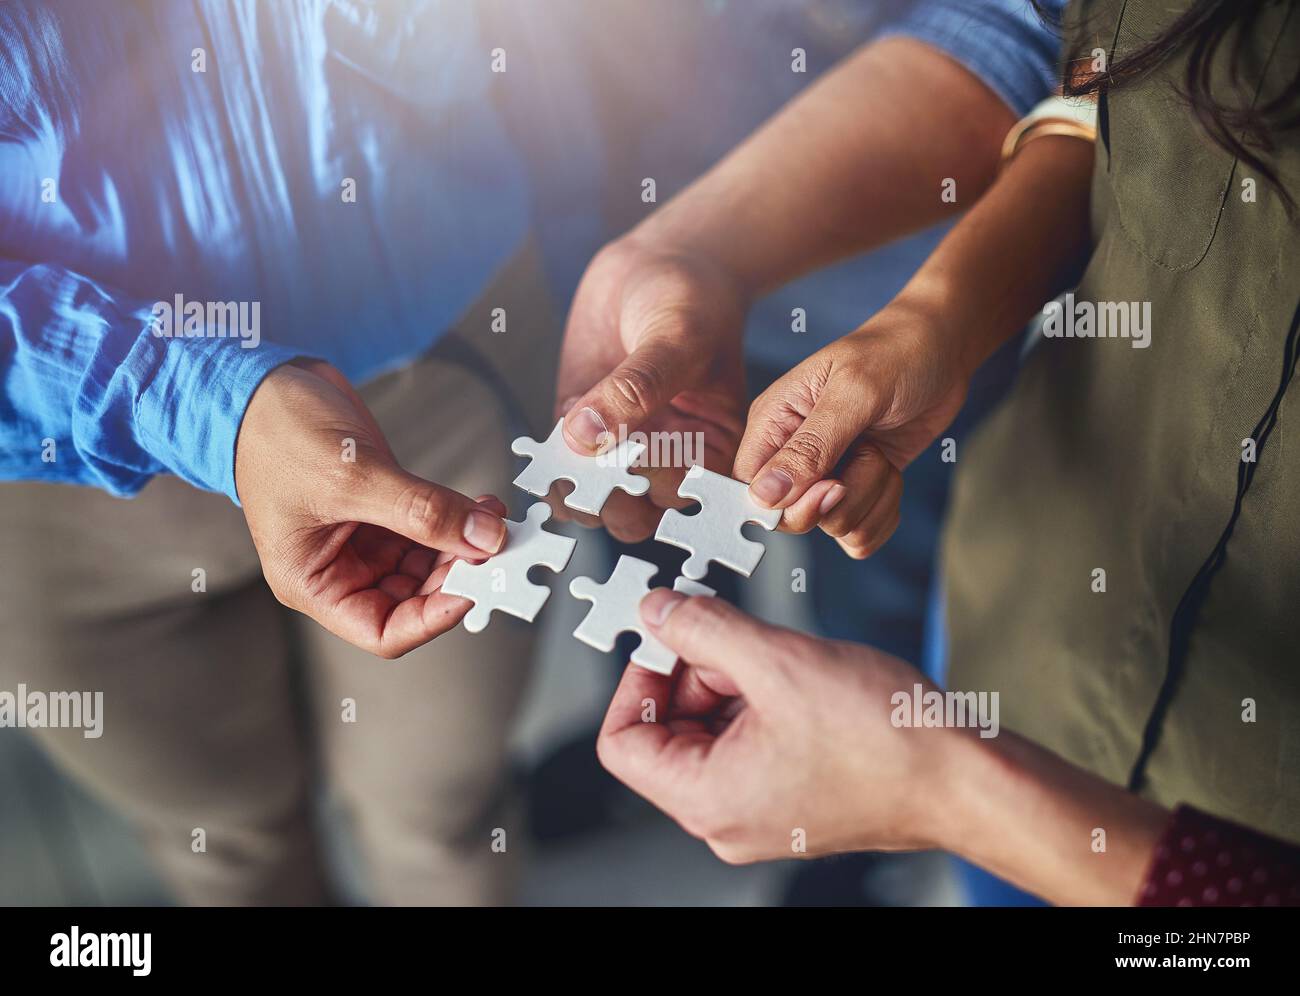 Trouver les bonnes solutions en équipe. Photo d'une équipe d'hommes et de femmes d'affaires mettant des pièces de puzzle ensemble dans un bureau. Banque D'Images